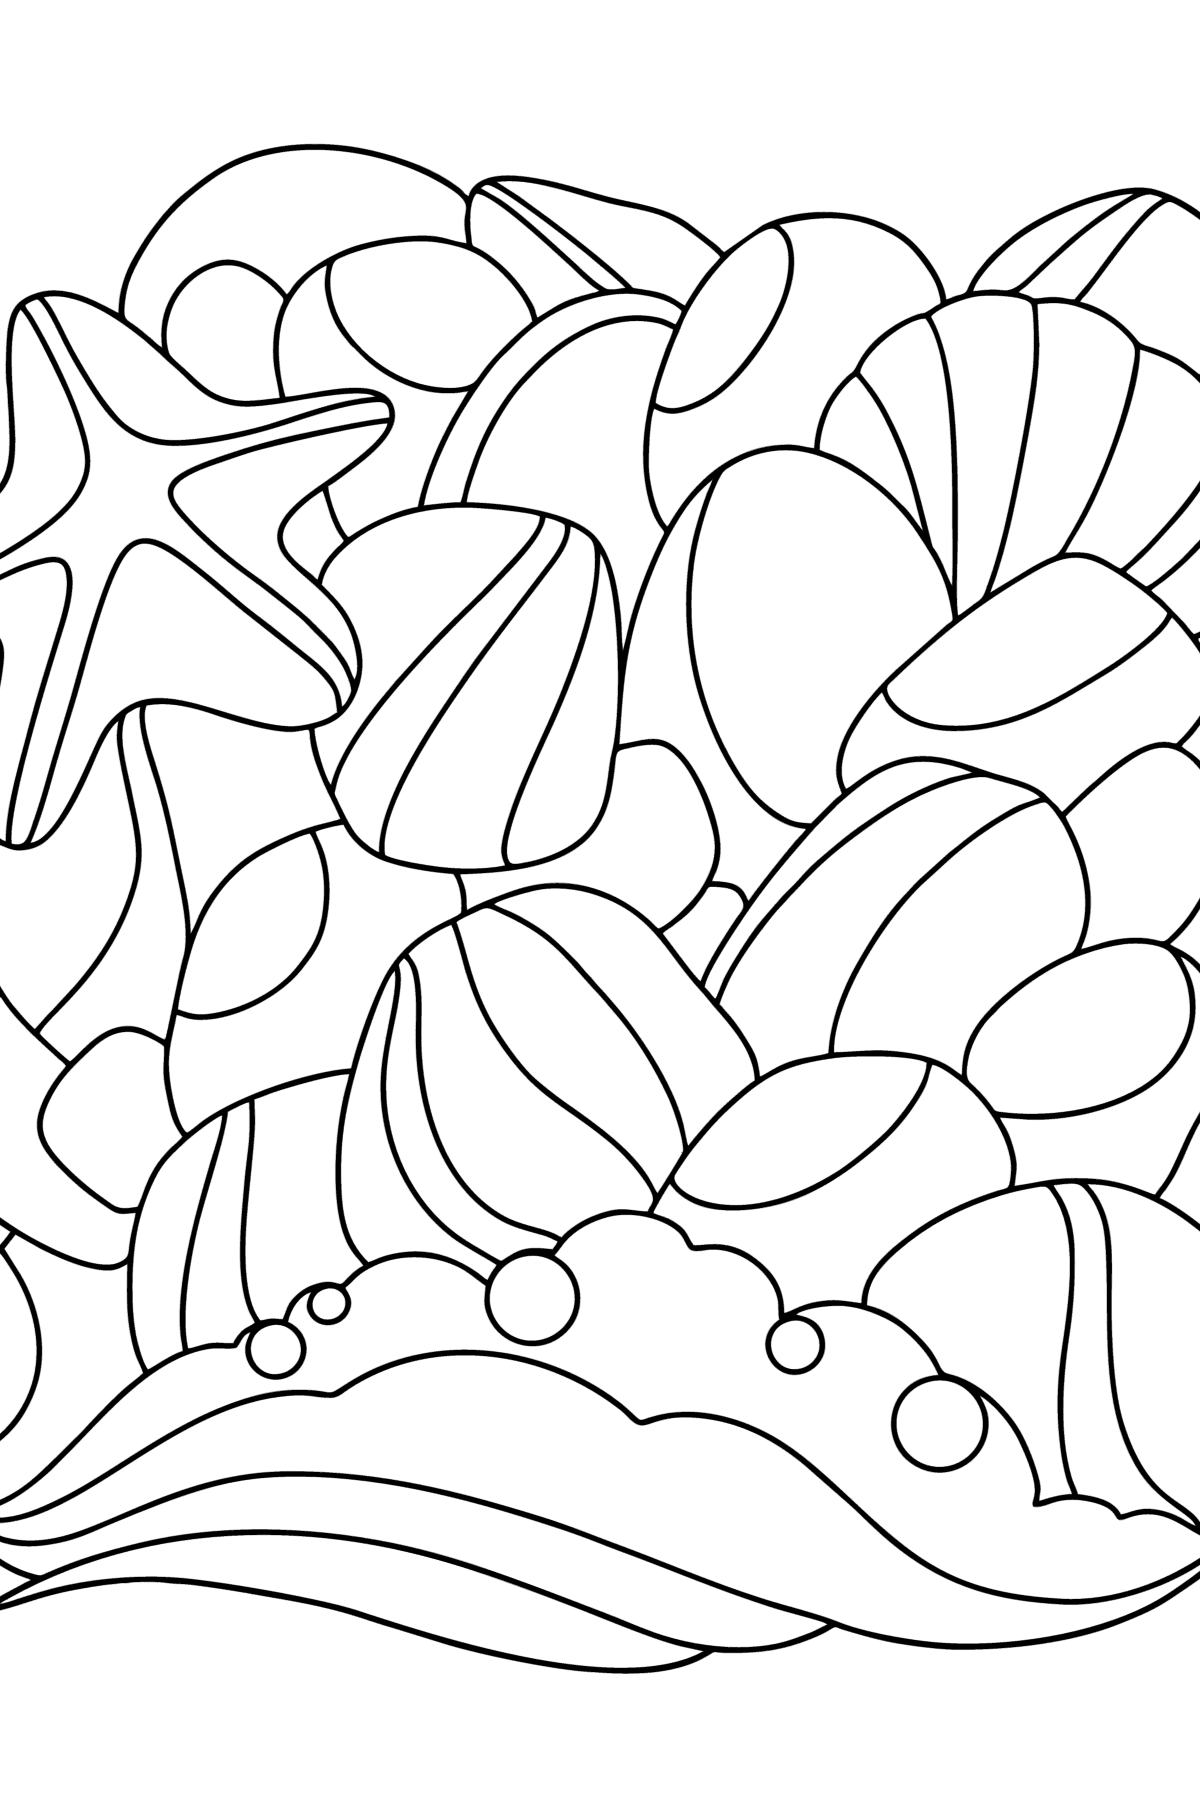 Kolorowanka Doodle dla dzieci - Morskie kamyki - Kolorowanki dla dzieci